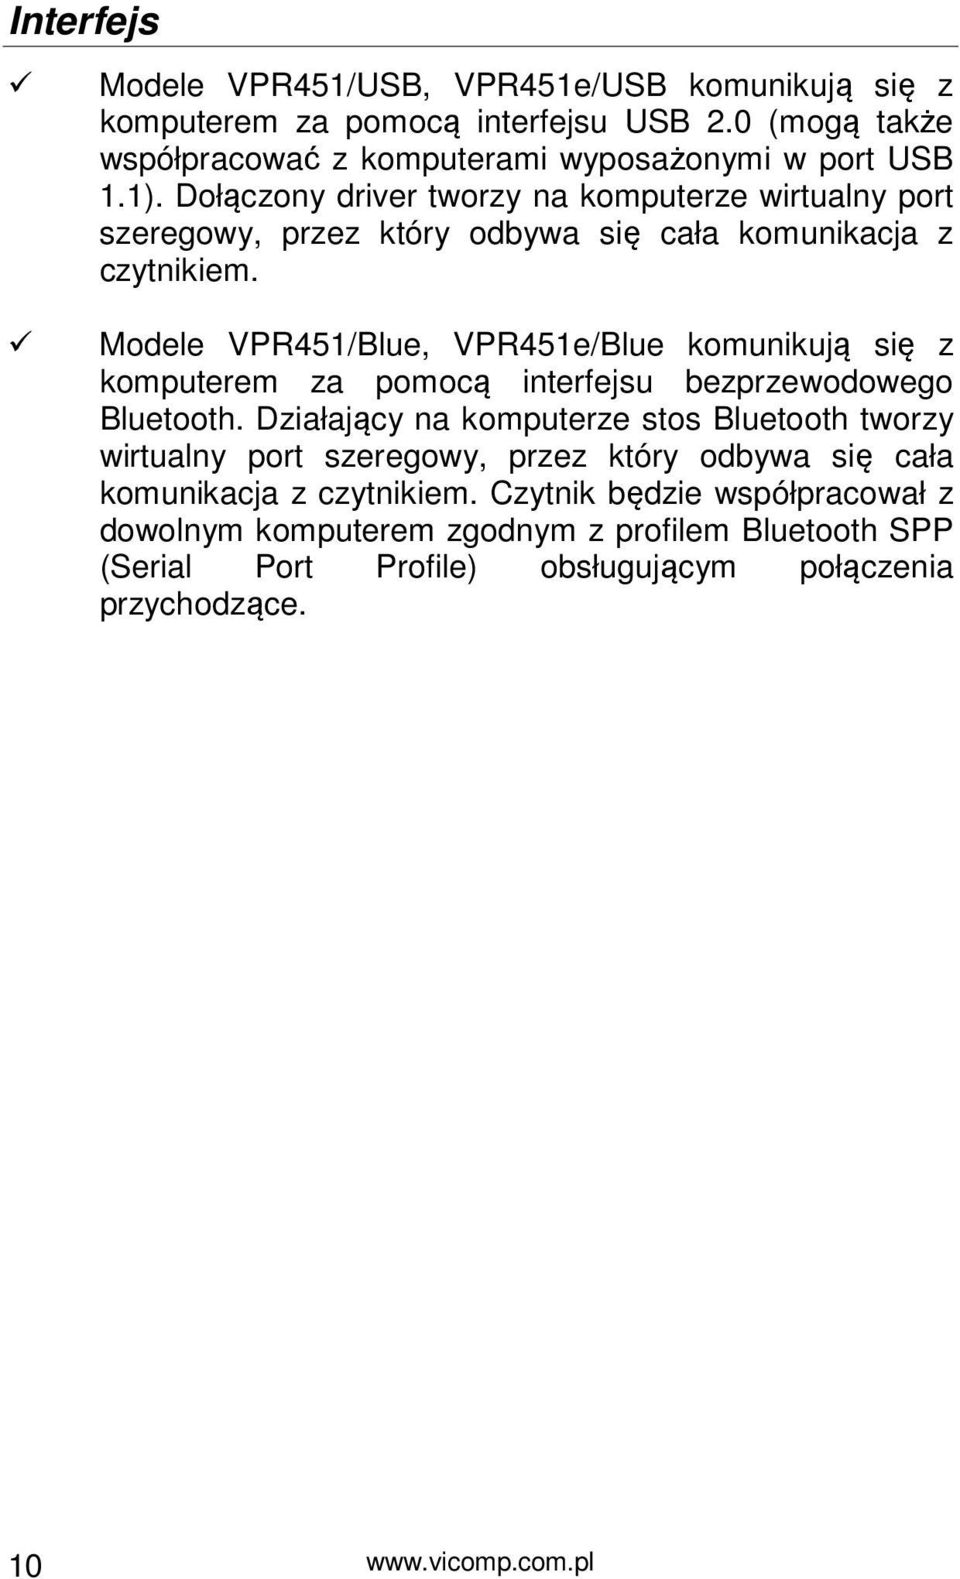 Modele VPR451/Blue, VPR451e/Blue komunikują się z komputerem za pomocą interfejsu bezprzewodowego Bluetooth.